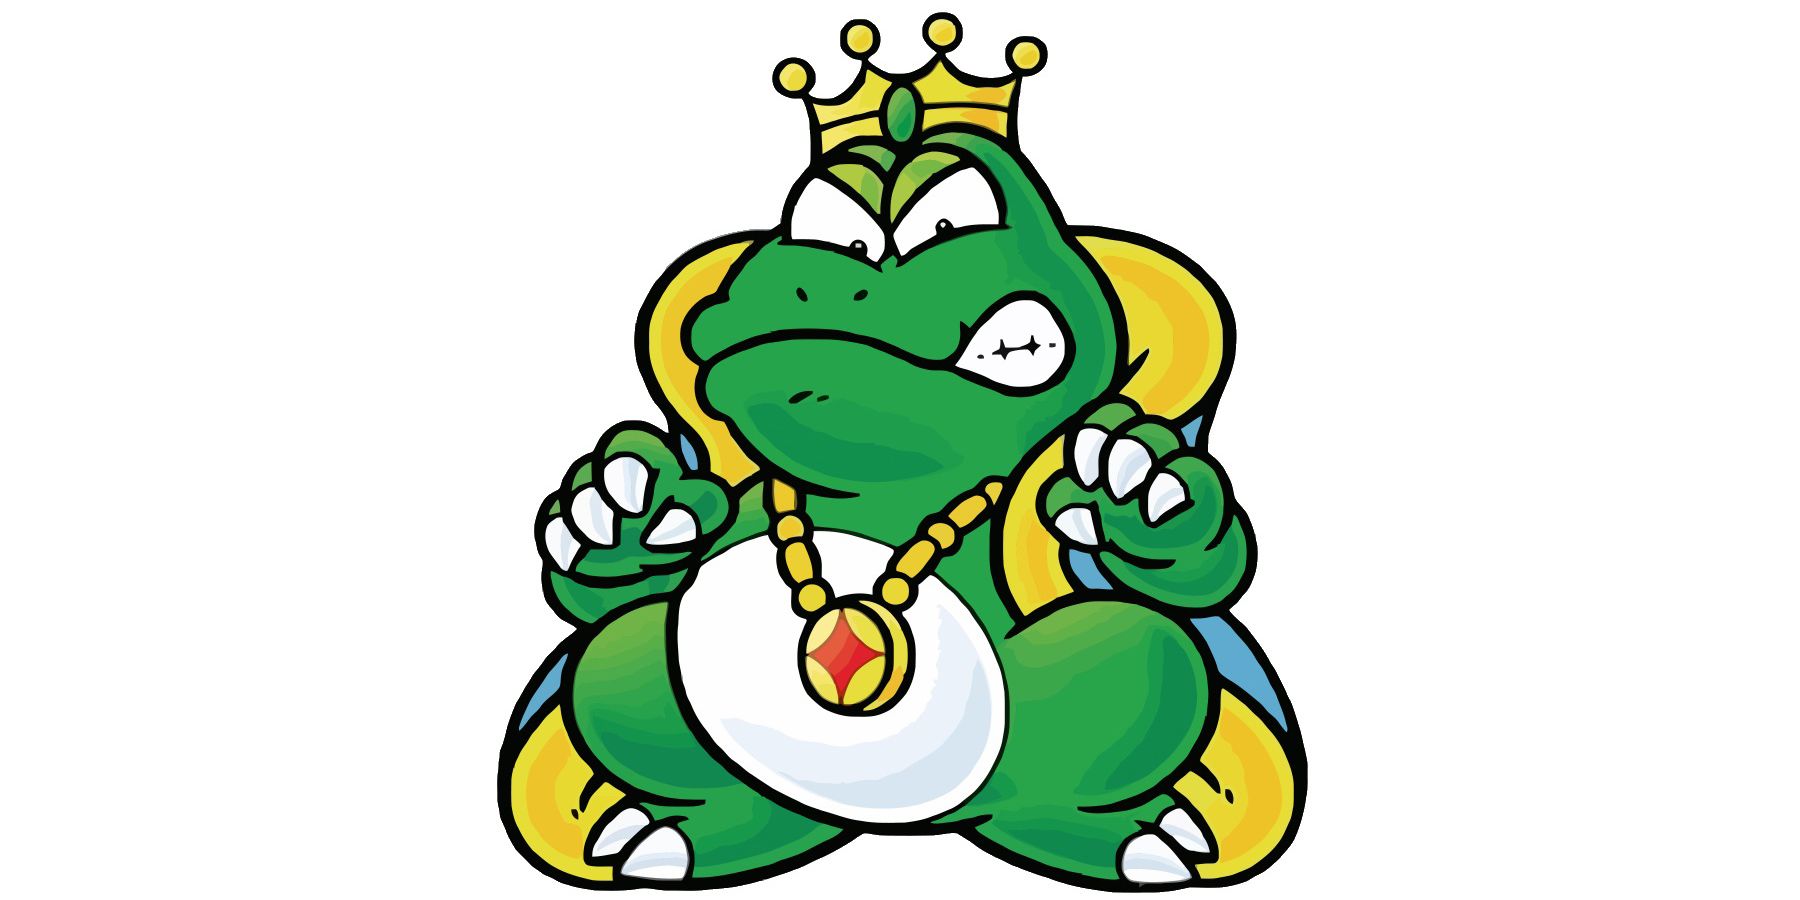 King Wart Mario